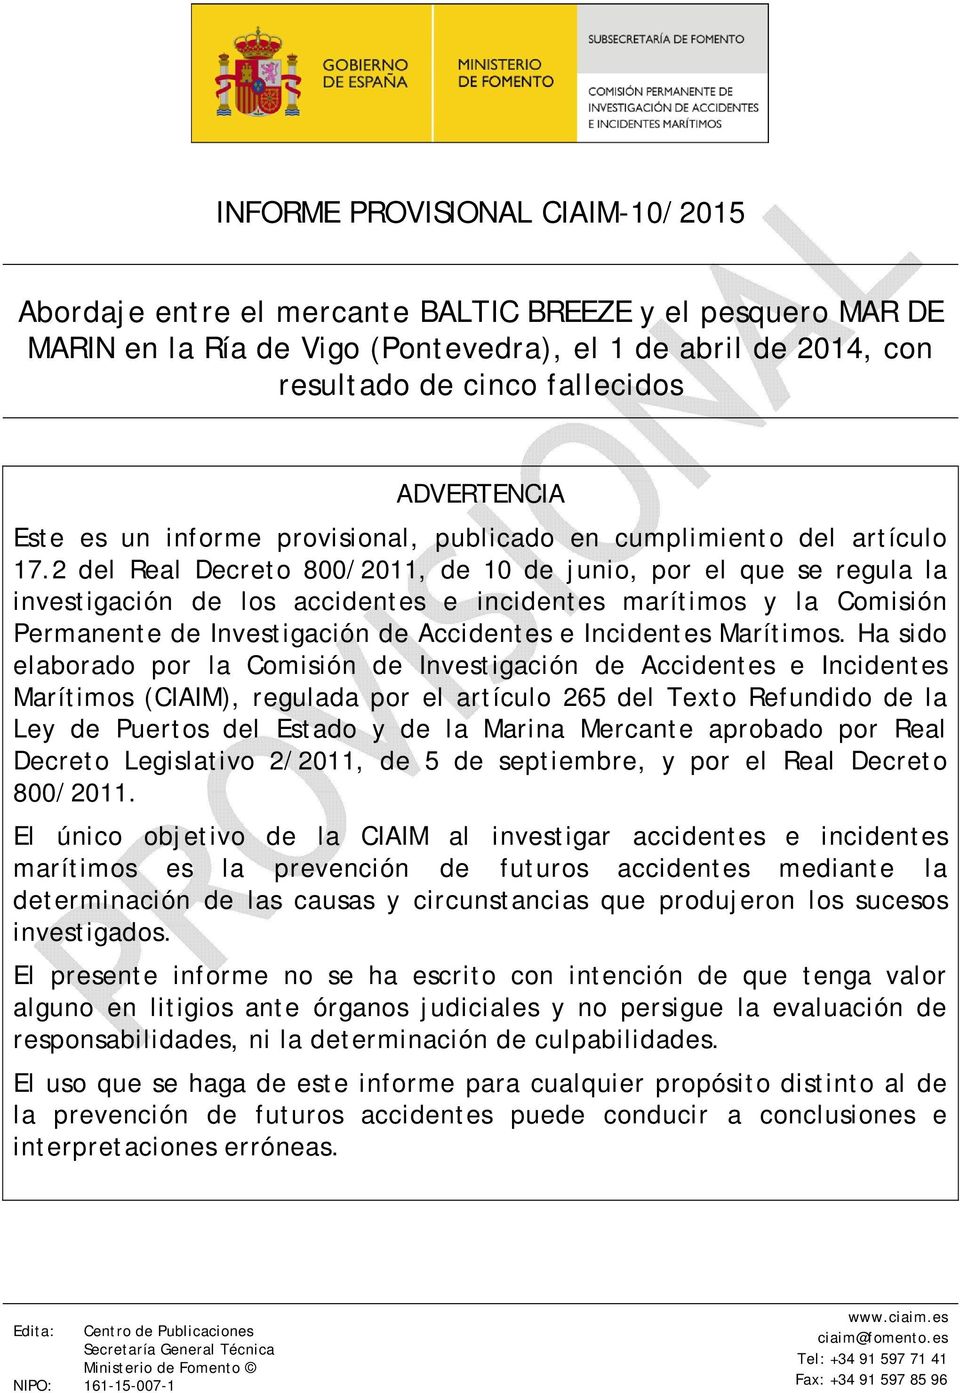 2 del Real Decreto 800/2011, de 10 de junio, por el que se regula la investigación de los accidentes e incidentes marítimos y la Comisión Permanente de Investigación de Accidentes e Incidentes